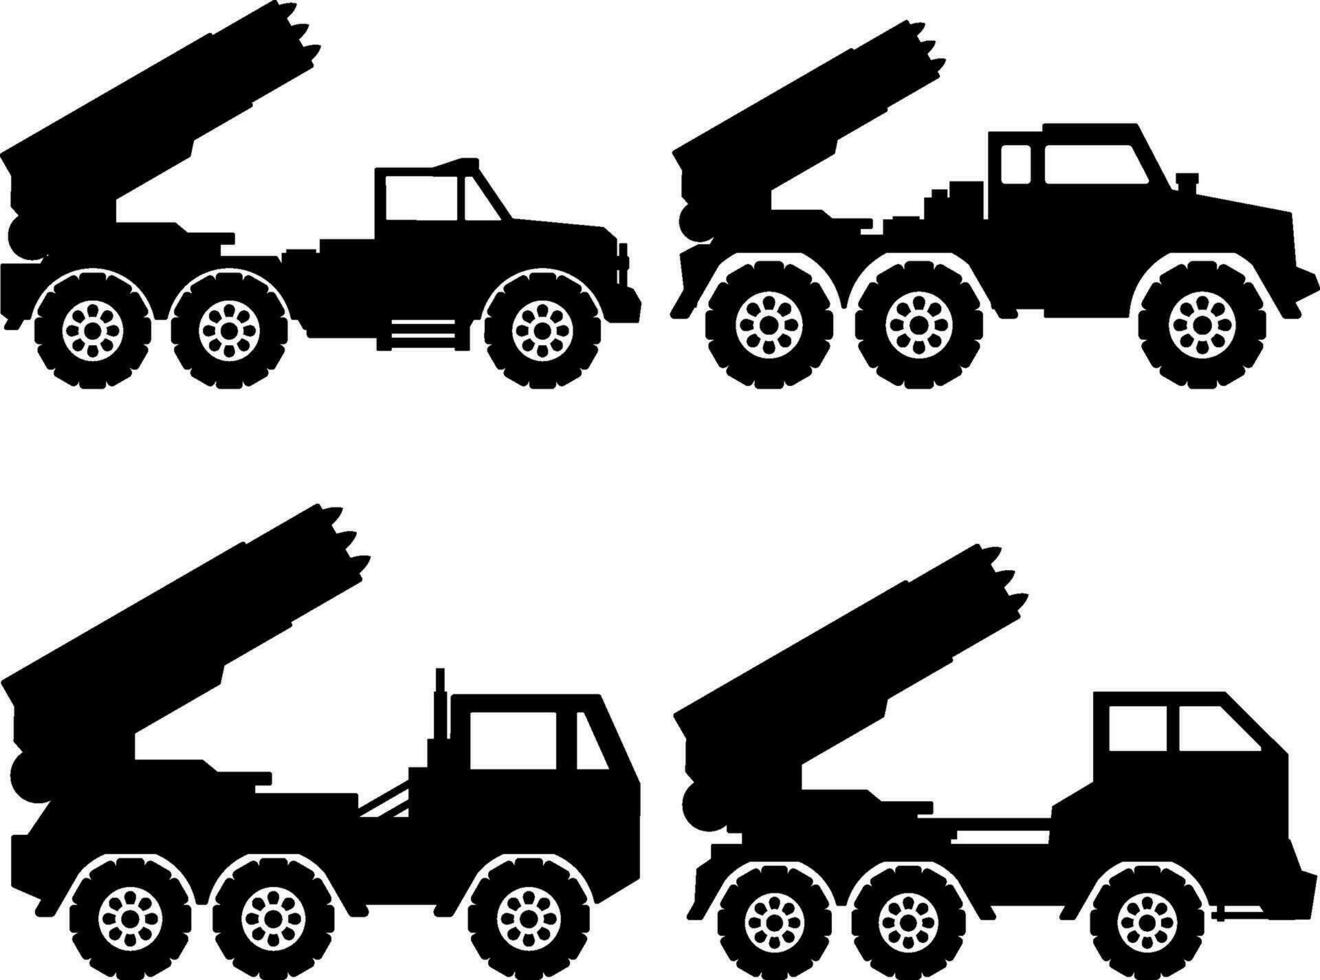 leger raket vrachtauto icoon set. raket draagraket vrachtauto silhouet voor icoon, symbool of teken. raket vrachtauto icoon voor leger, oorlog, slagveld, conflict en verdediging vector